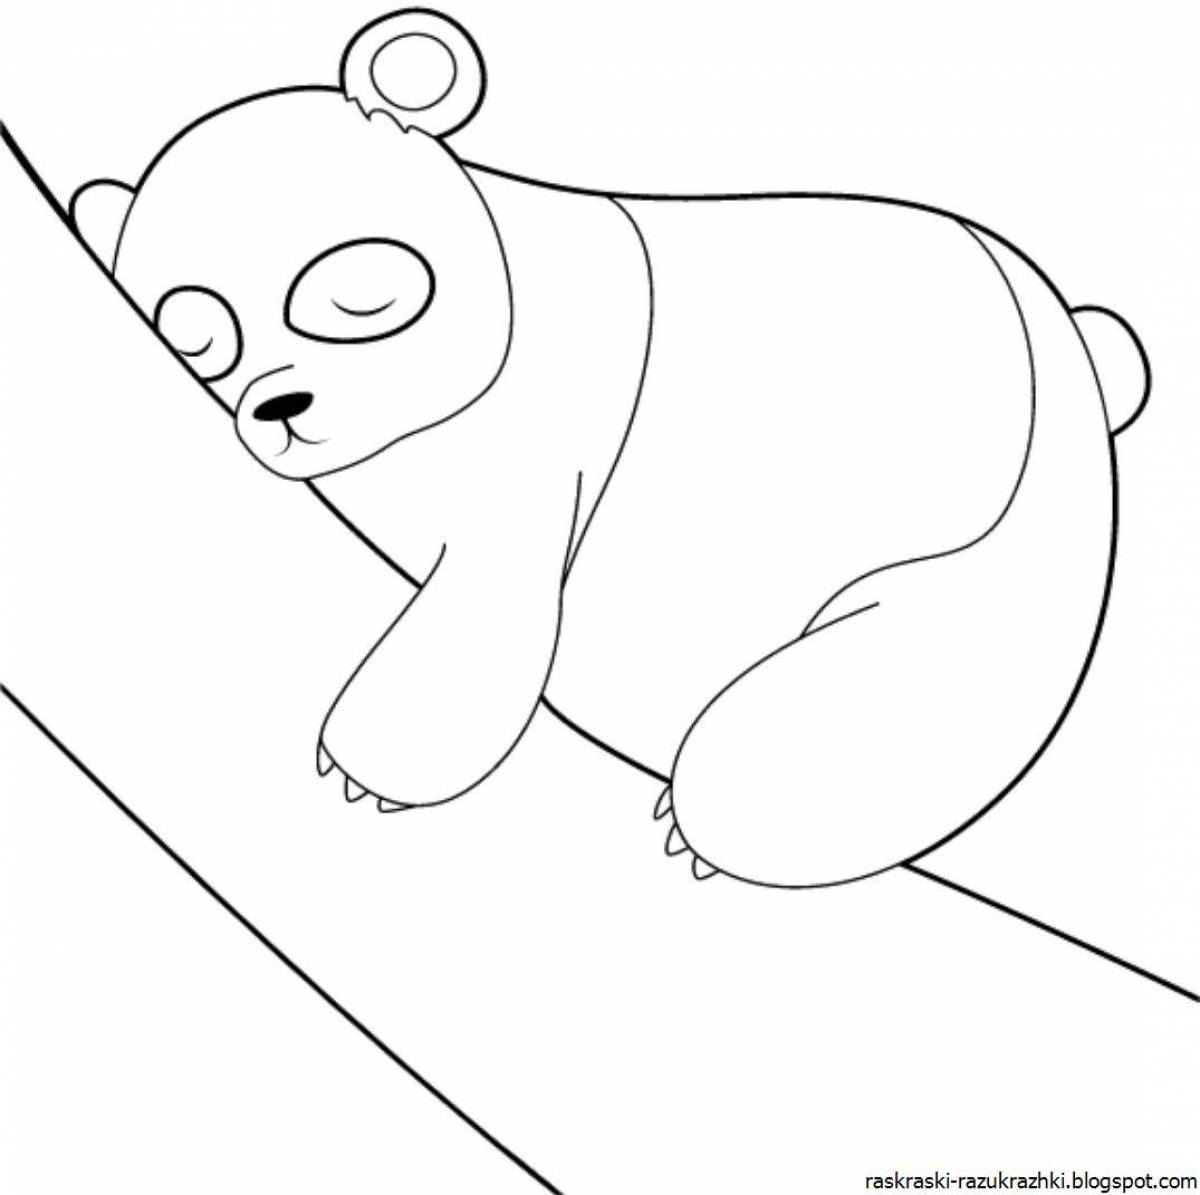 Live panda coloring book